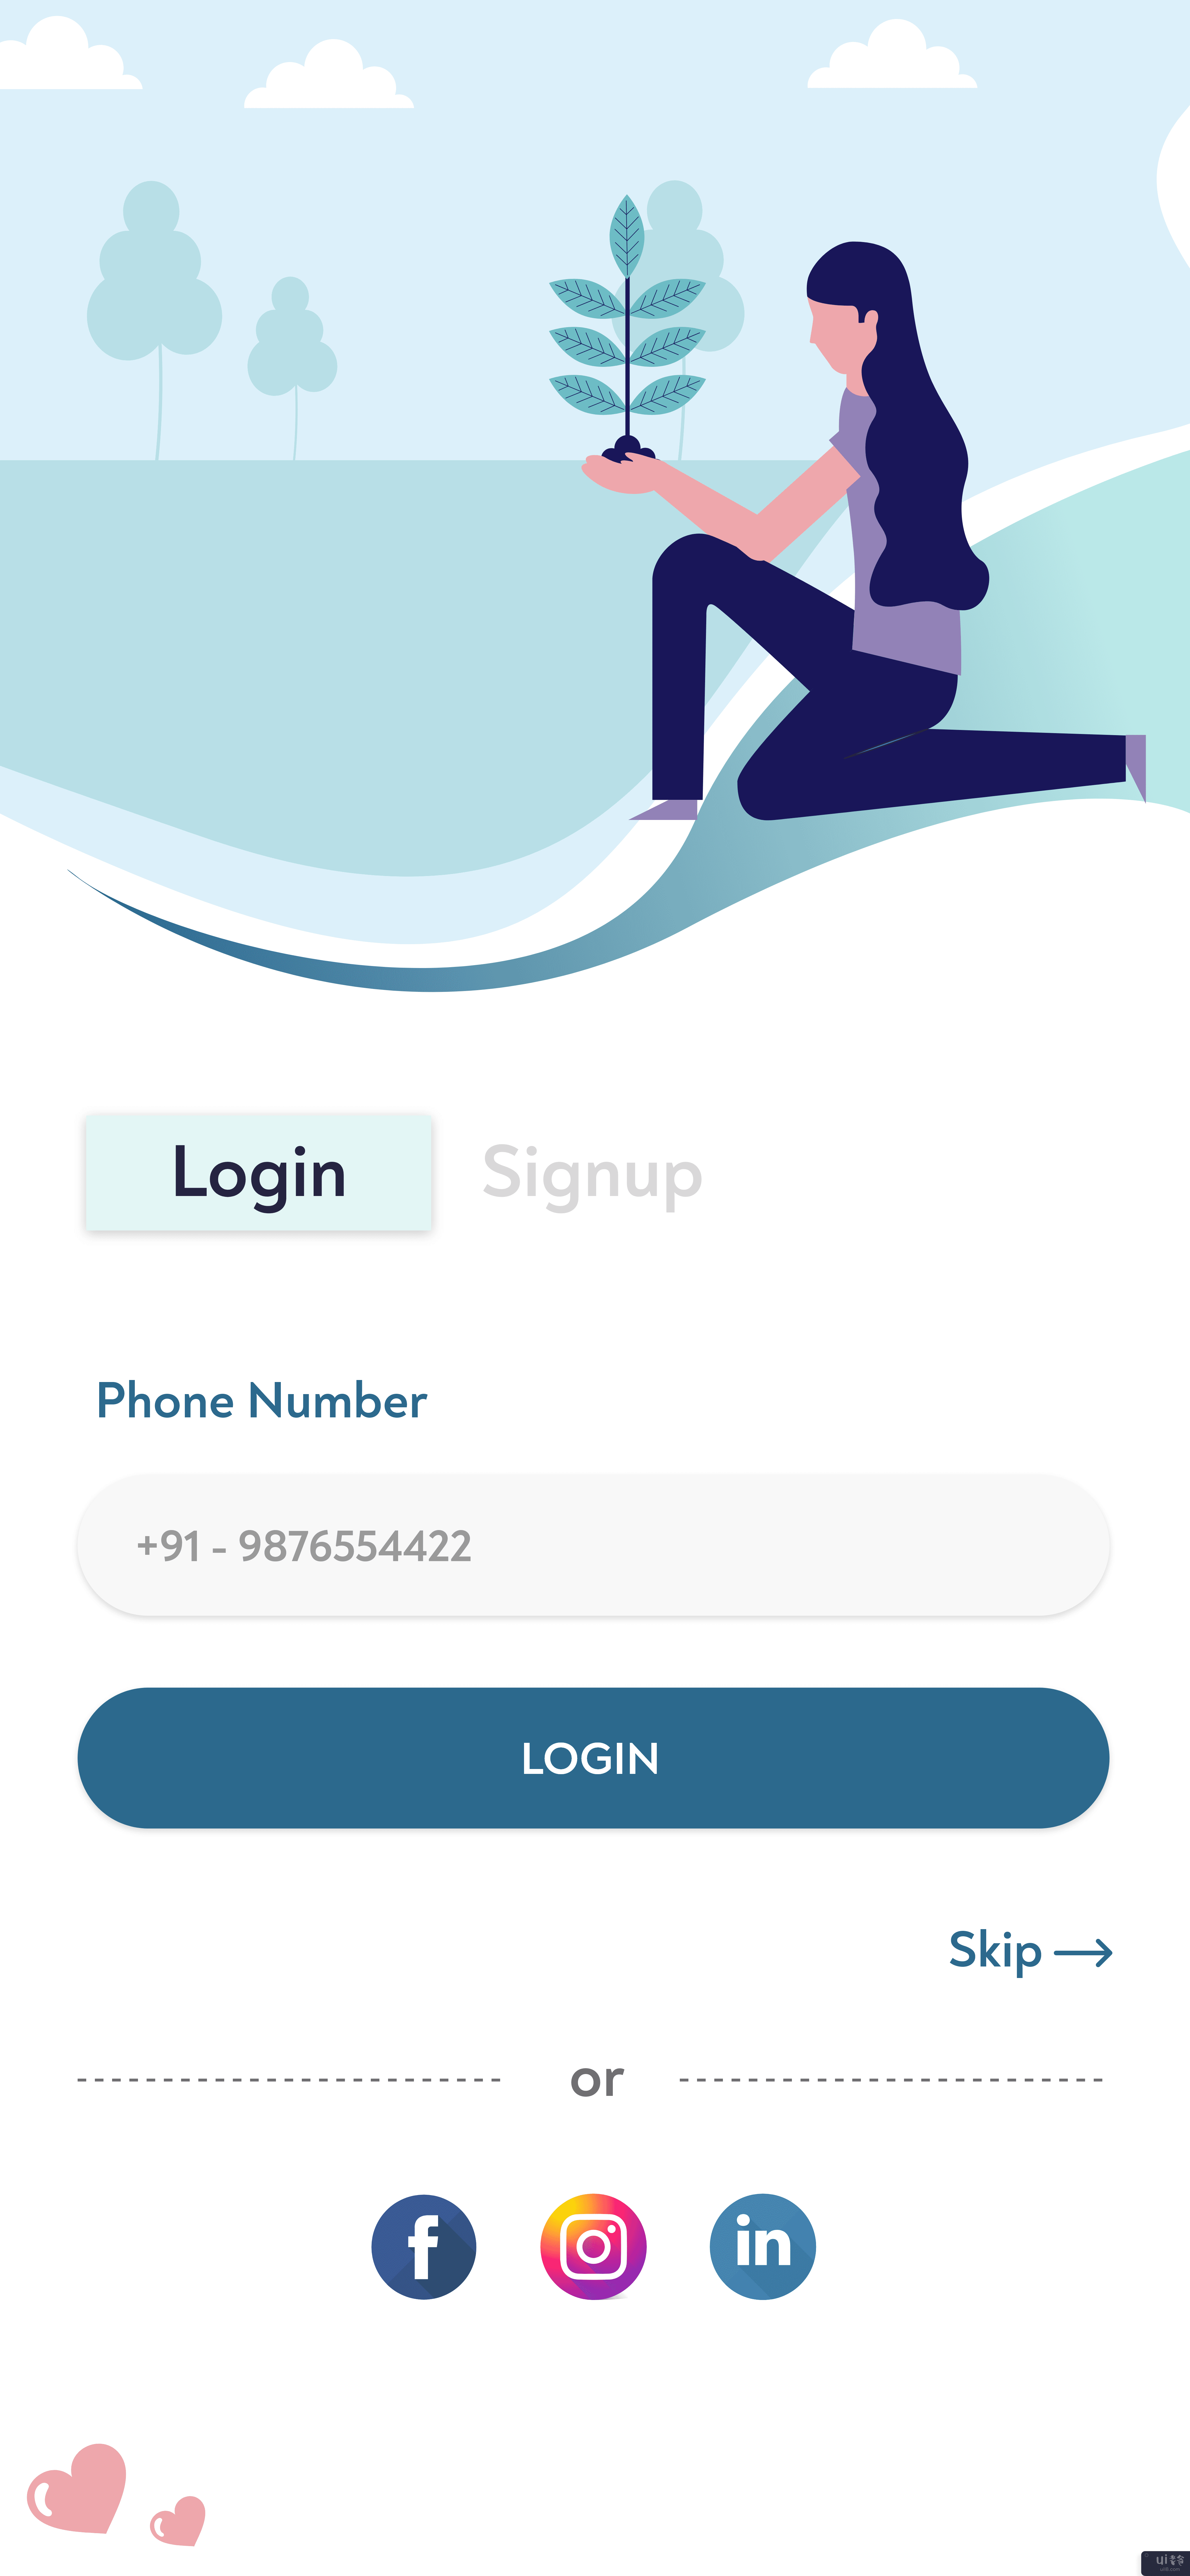 登录 - 注册工具包(Login - Signup Kit)插图3